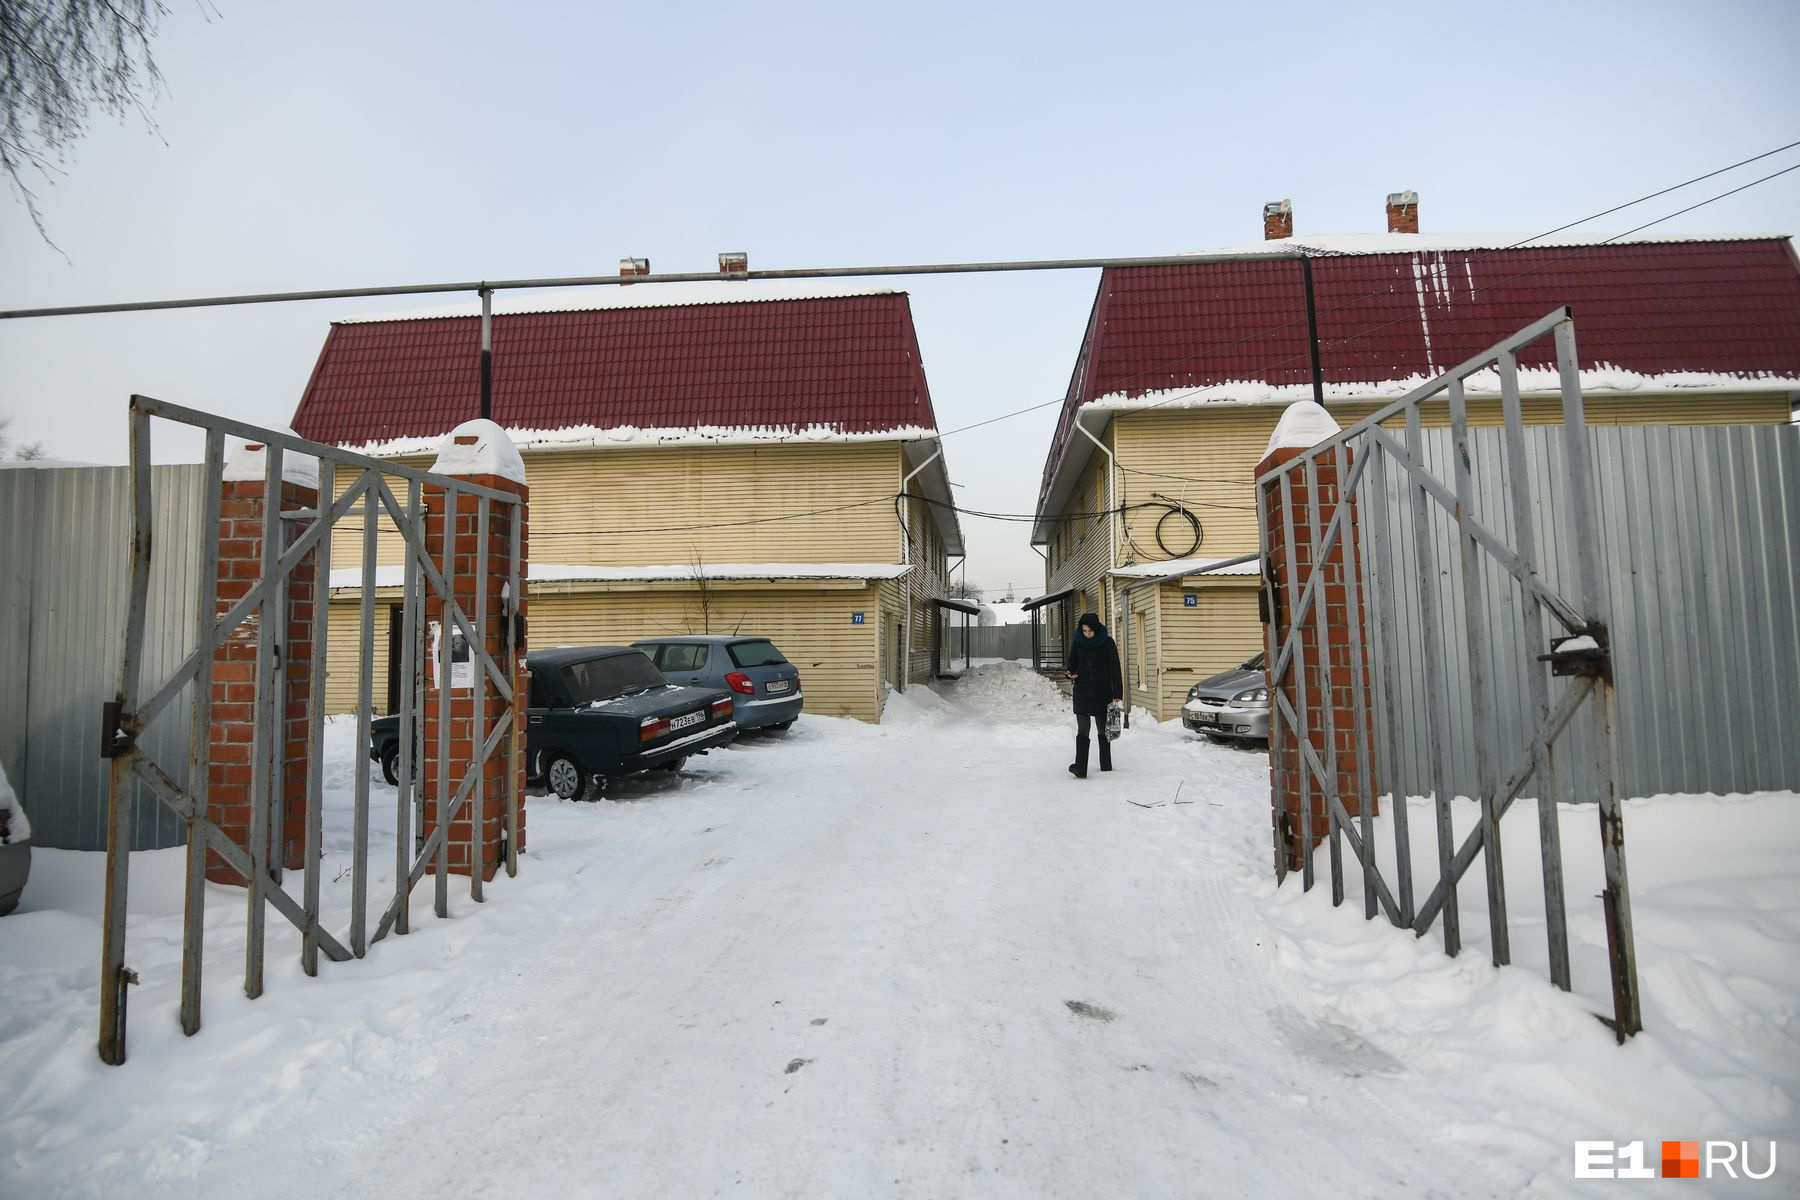 Жители двух домов на Орловской, напротив, ждут, когда их расселят в благоустроенное жилье